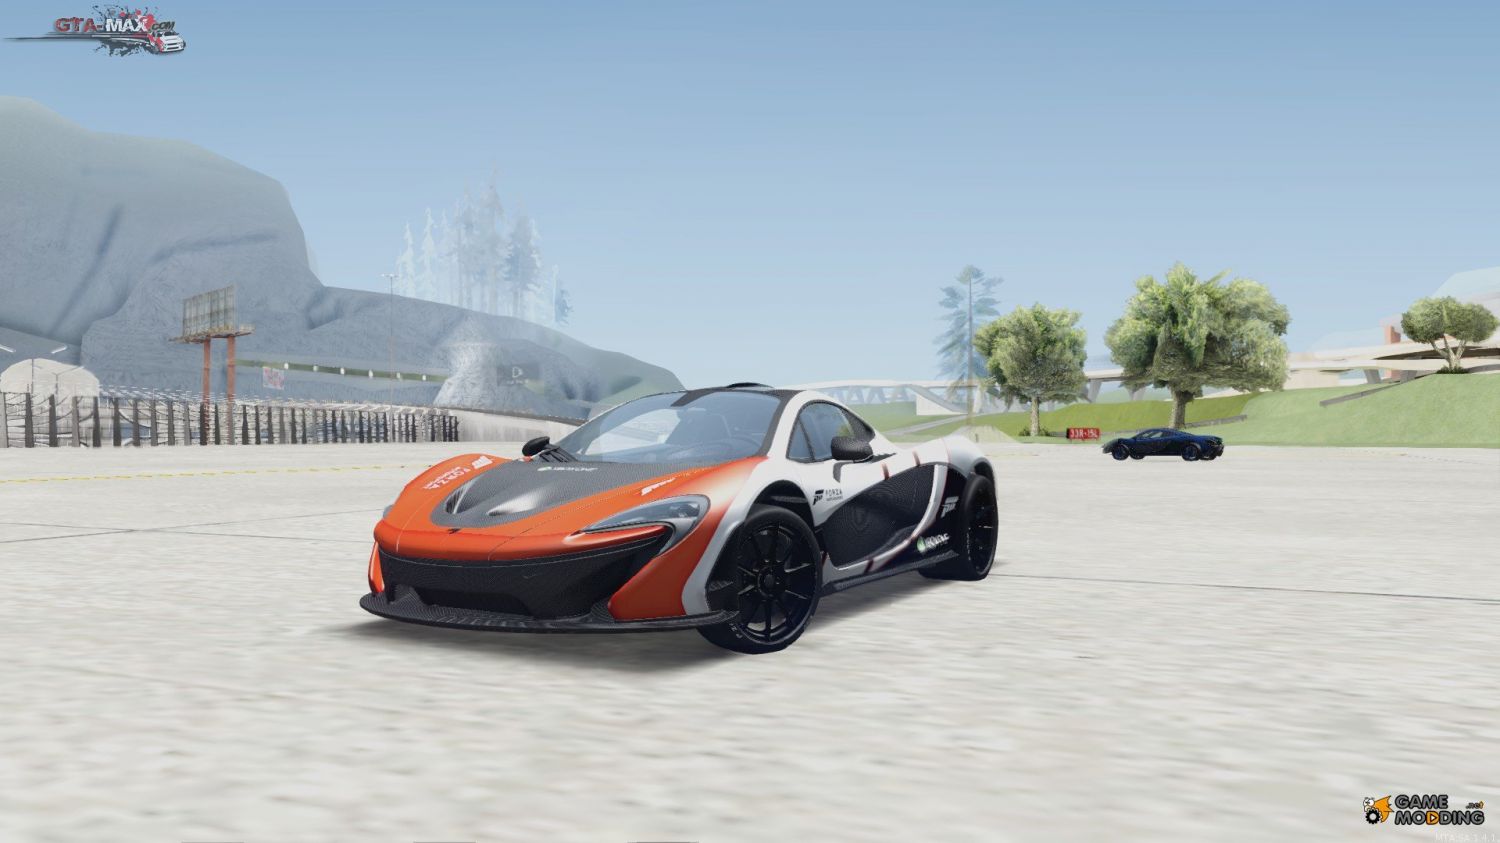 McLaren P1 HQ для GTA San Andreas